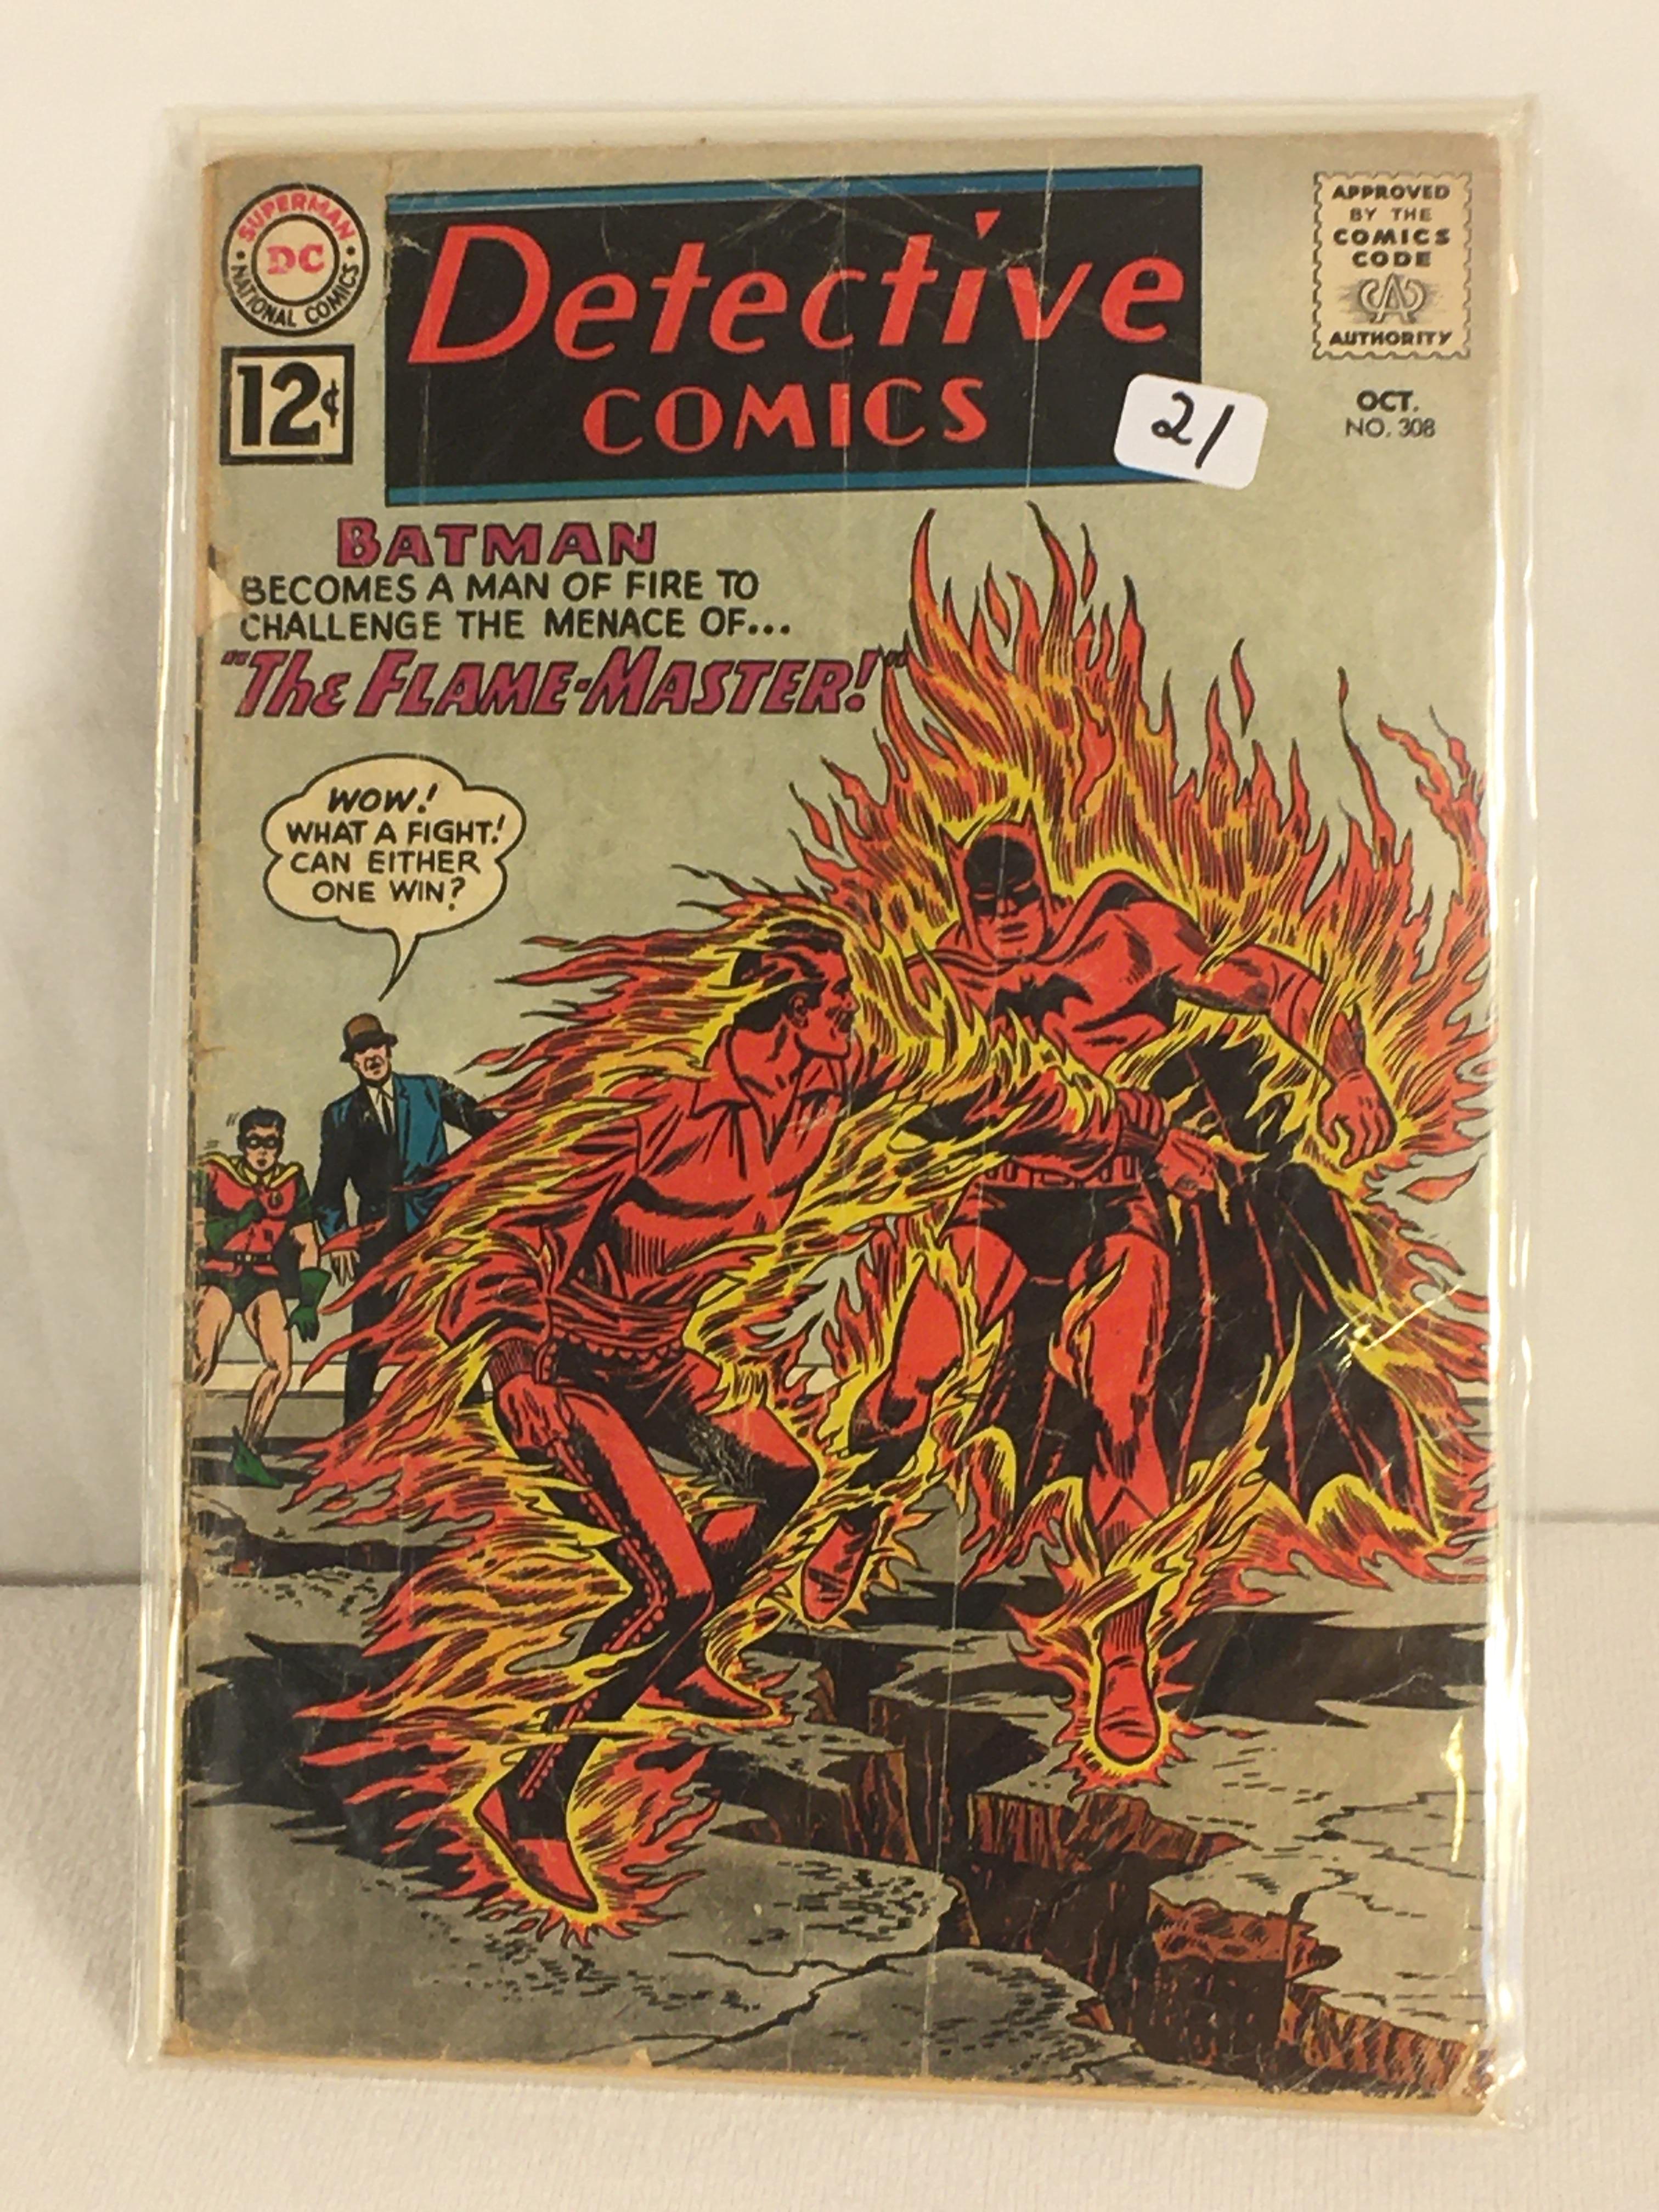 Collector Vintage DC, Comics Detective Comics Batman The Flame-Master Comic Book #307